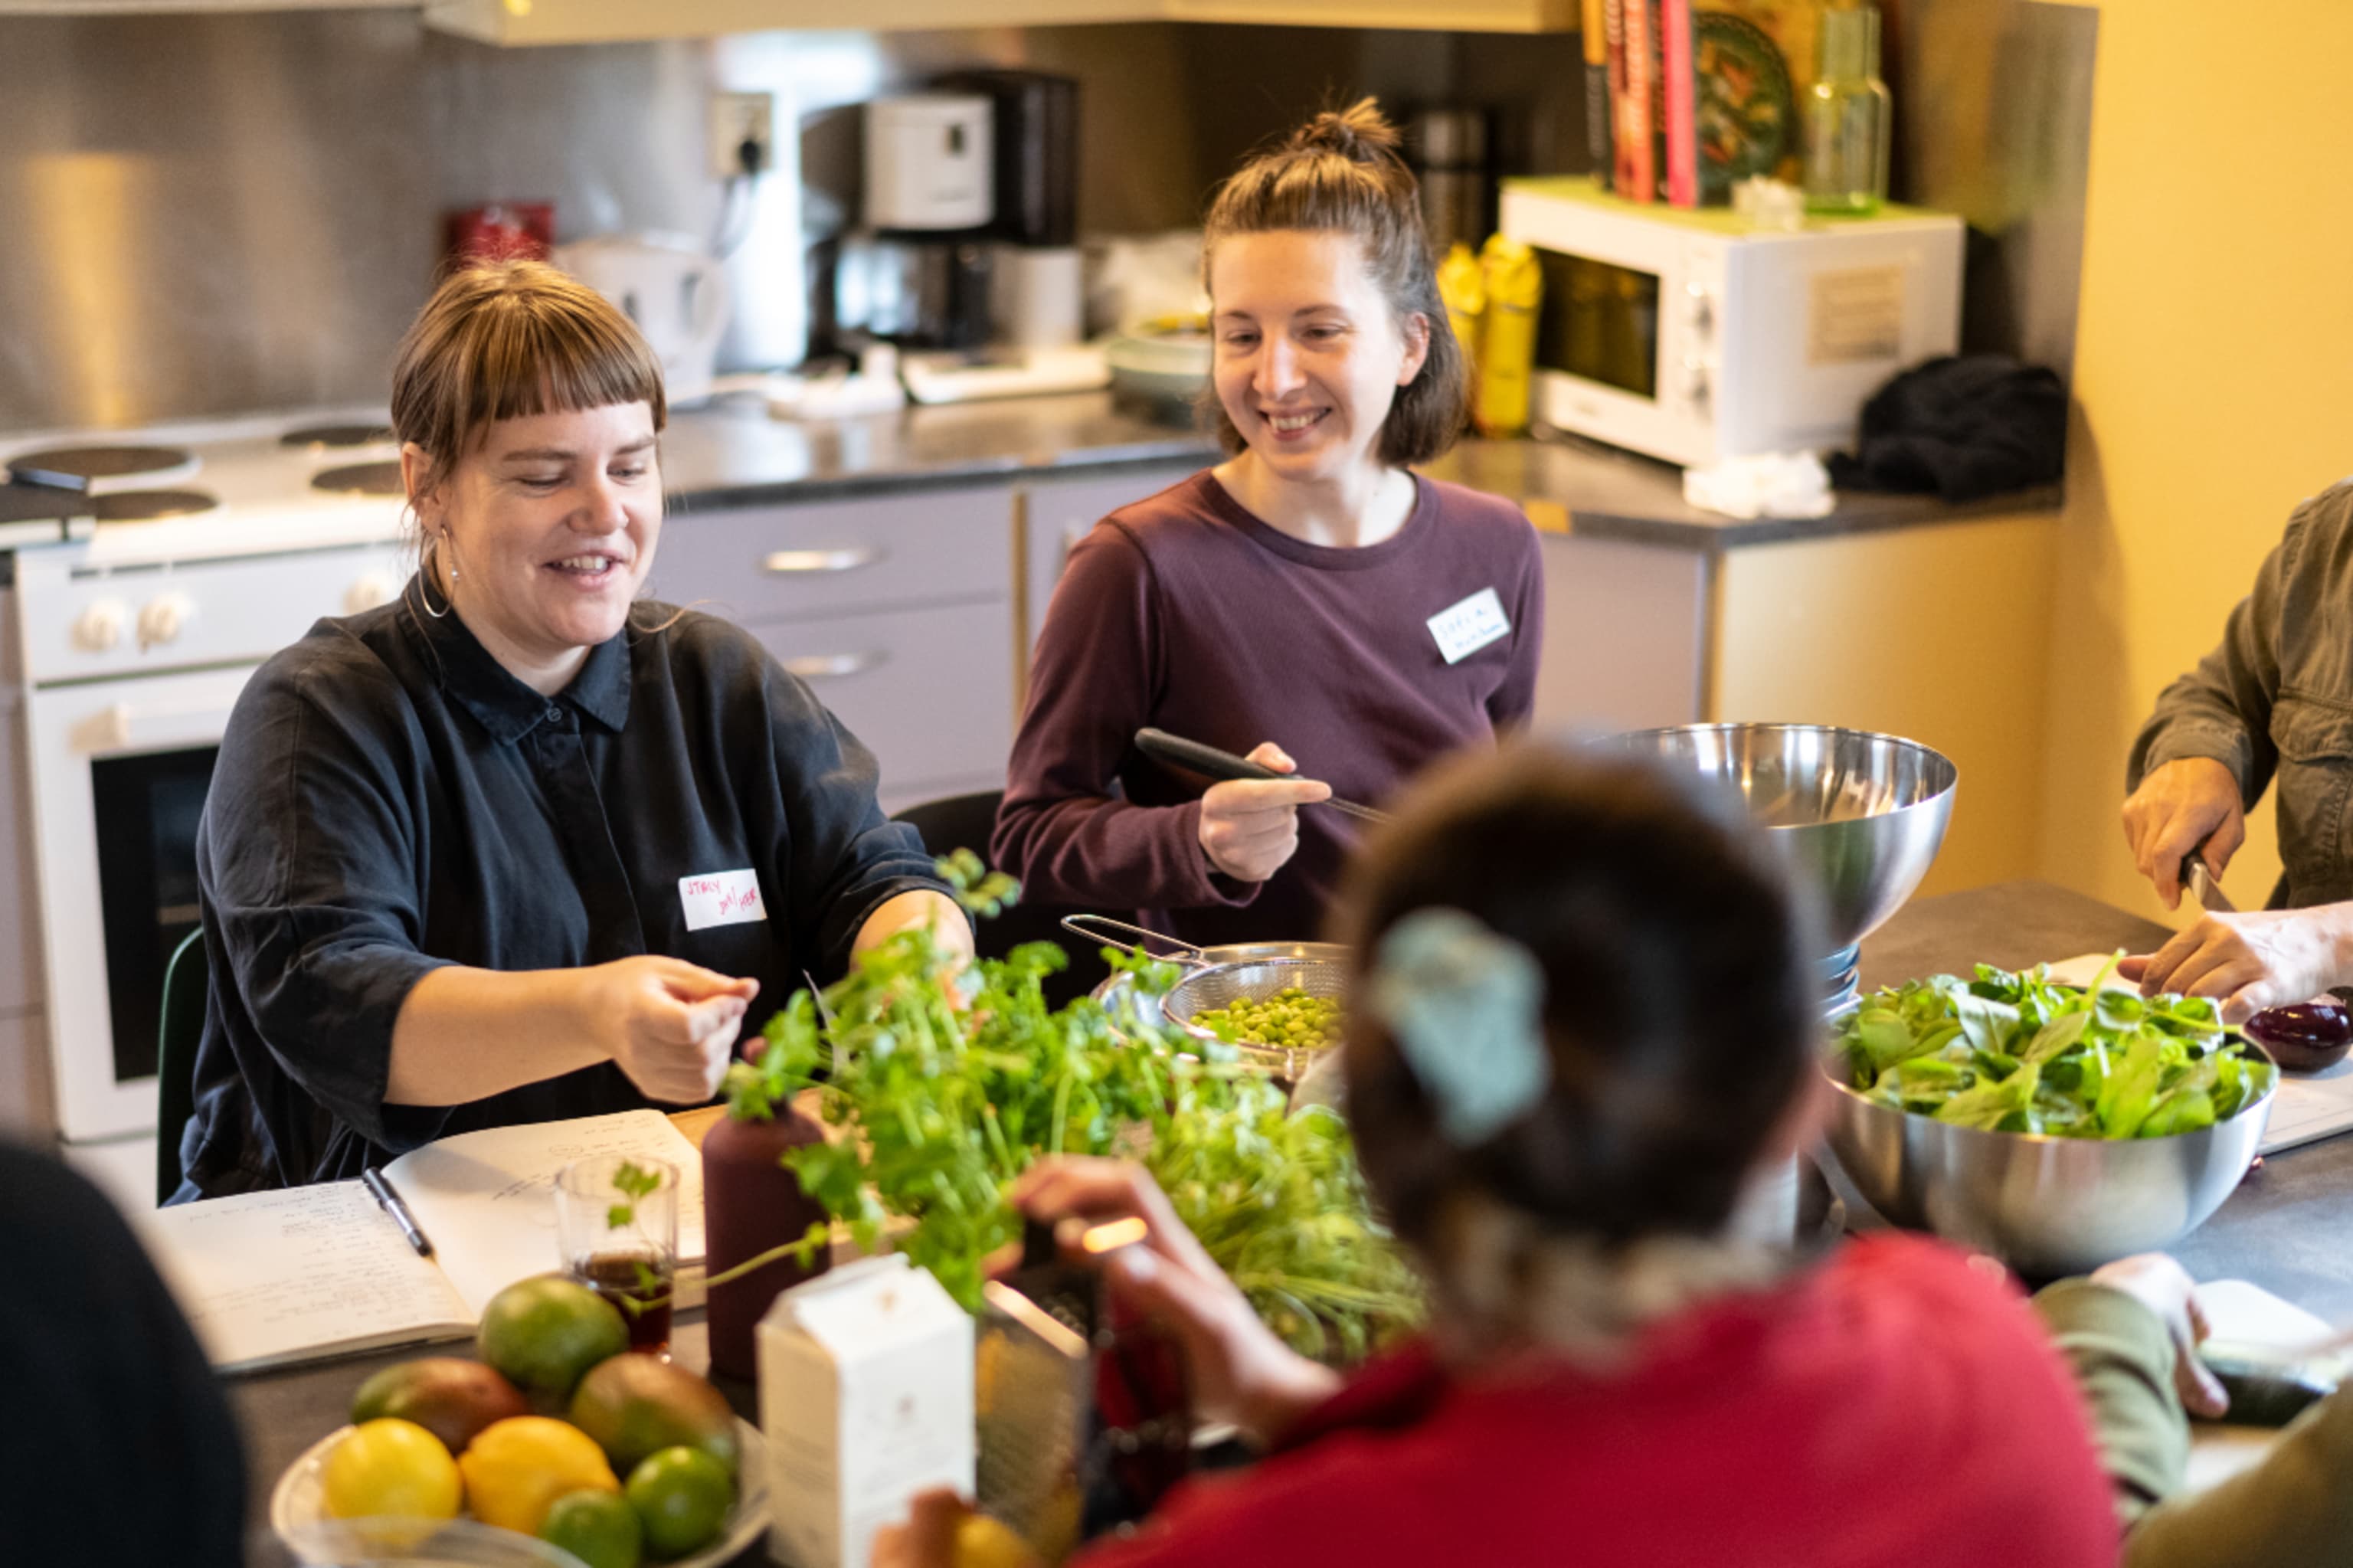 Kitchen Garden Workshop With Stacy Brafield In The Women's Ward Of Bergen Prison.  Photo: Thor Brødreskift.